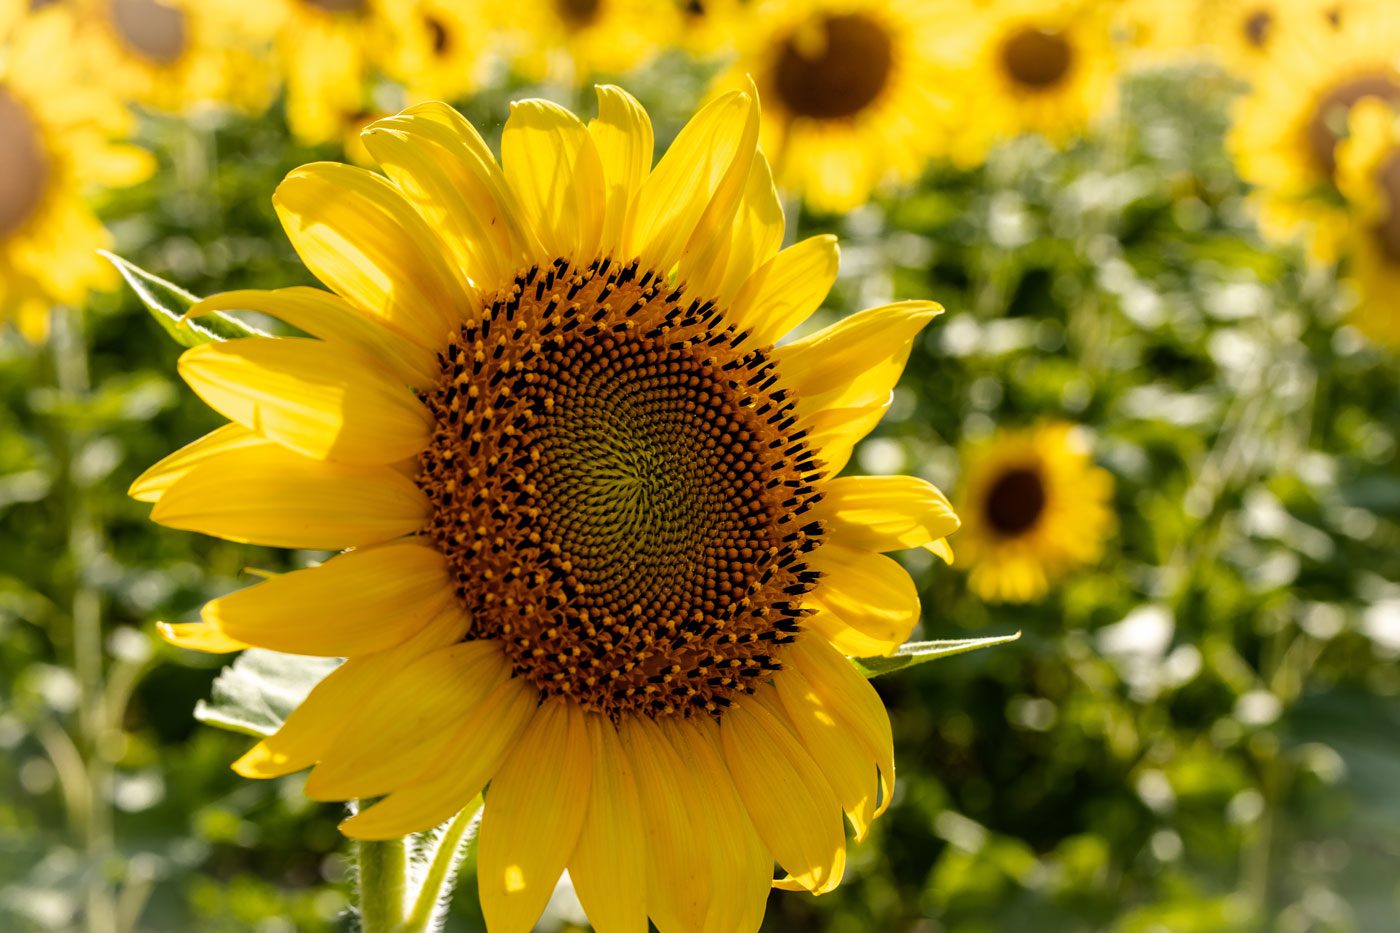 Matthiessen-Sunflowers